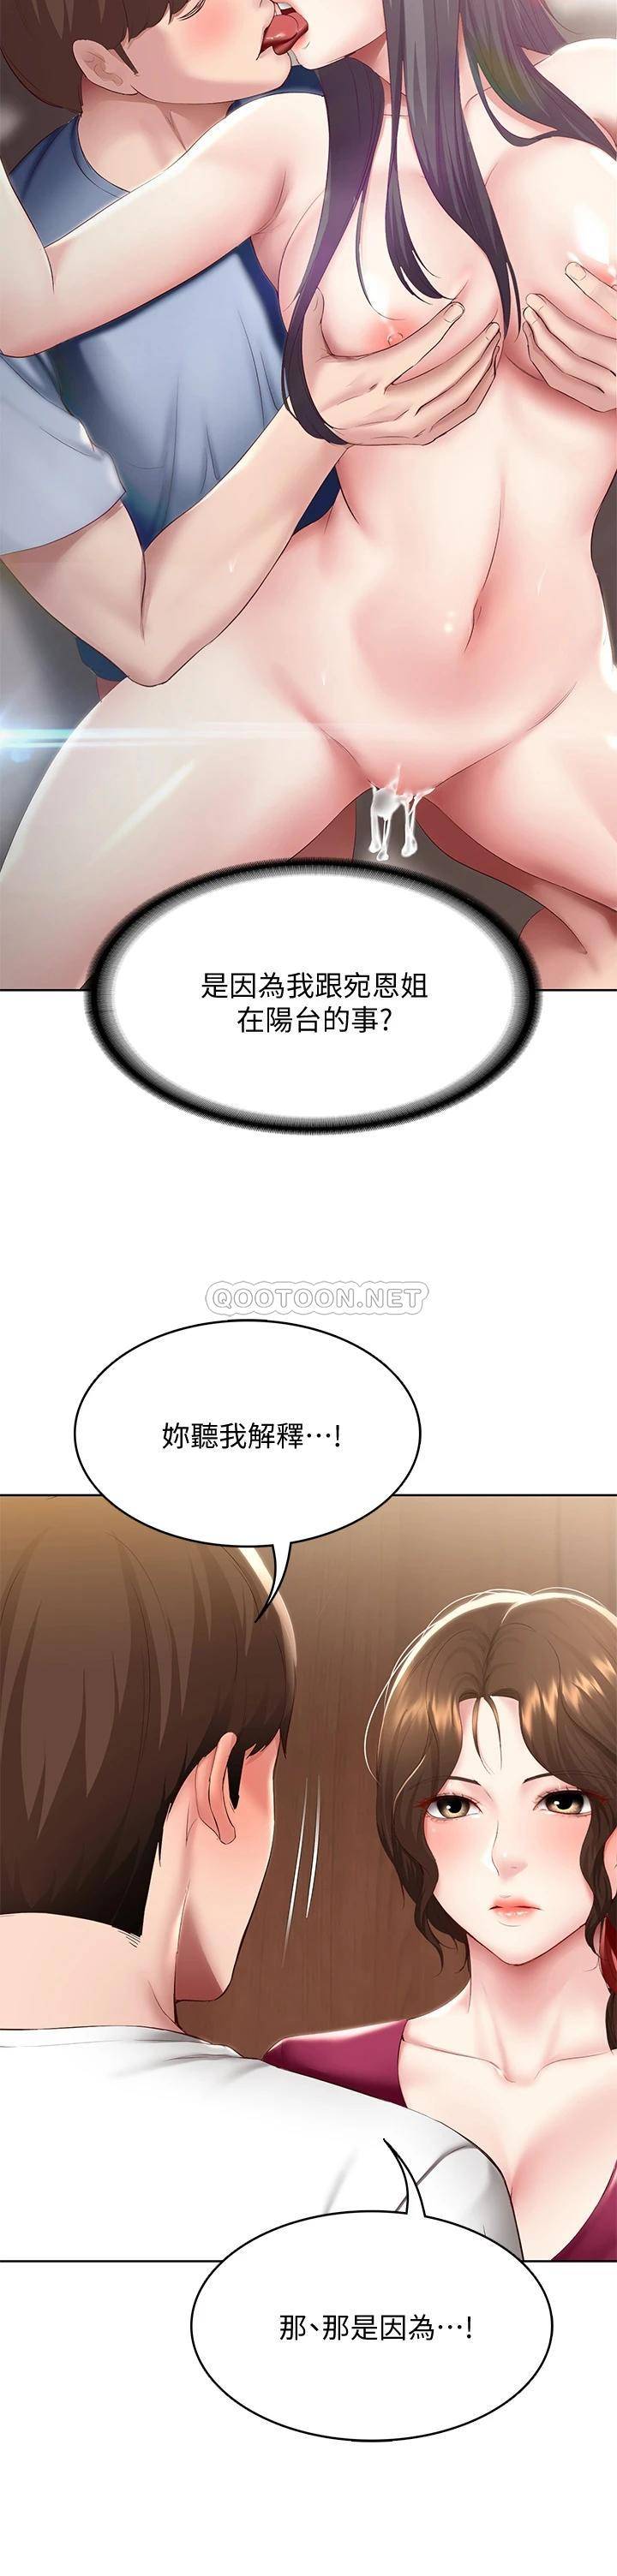 韩国污漫画 寄宿日記 第88话嫉妒女儿的美静 7